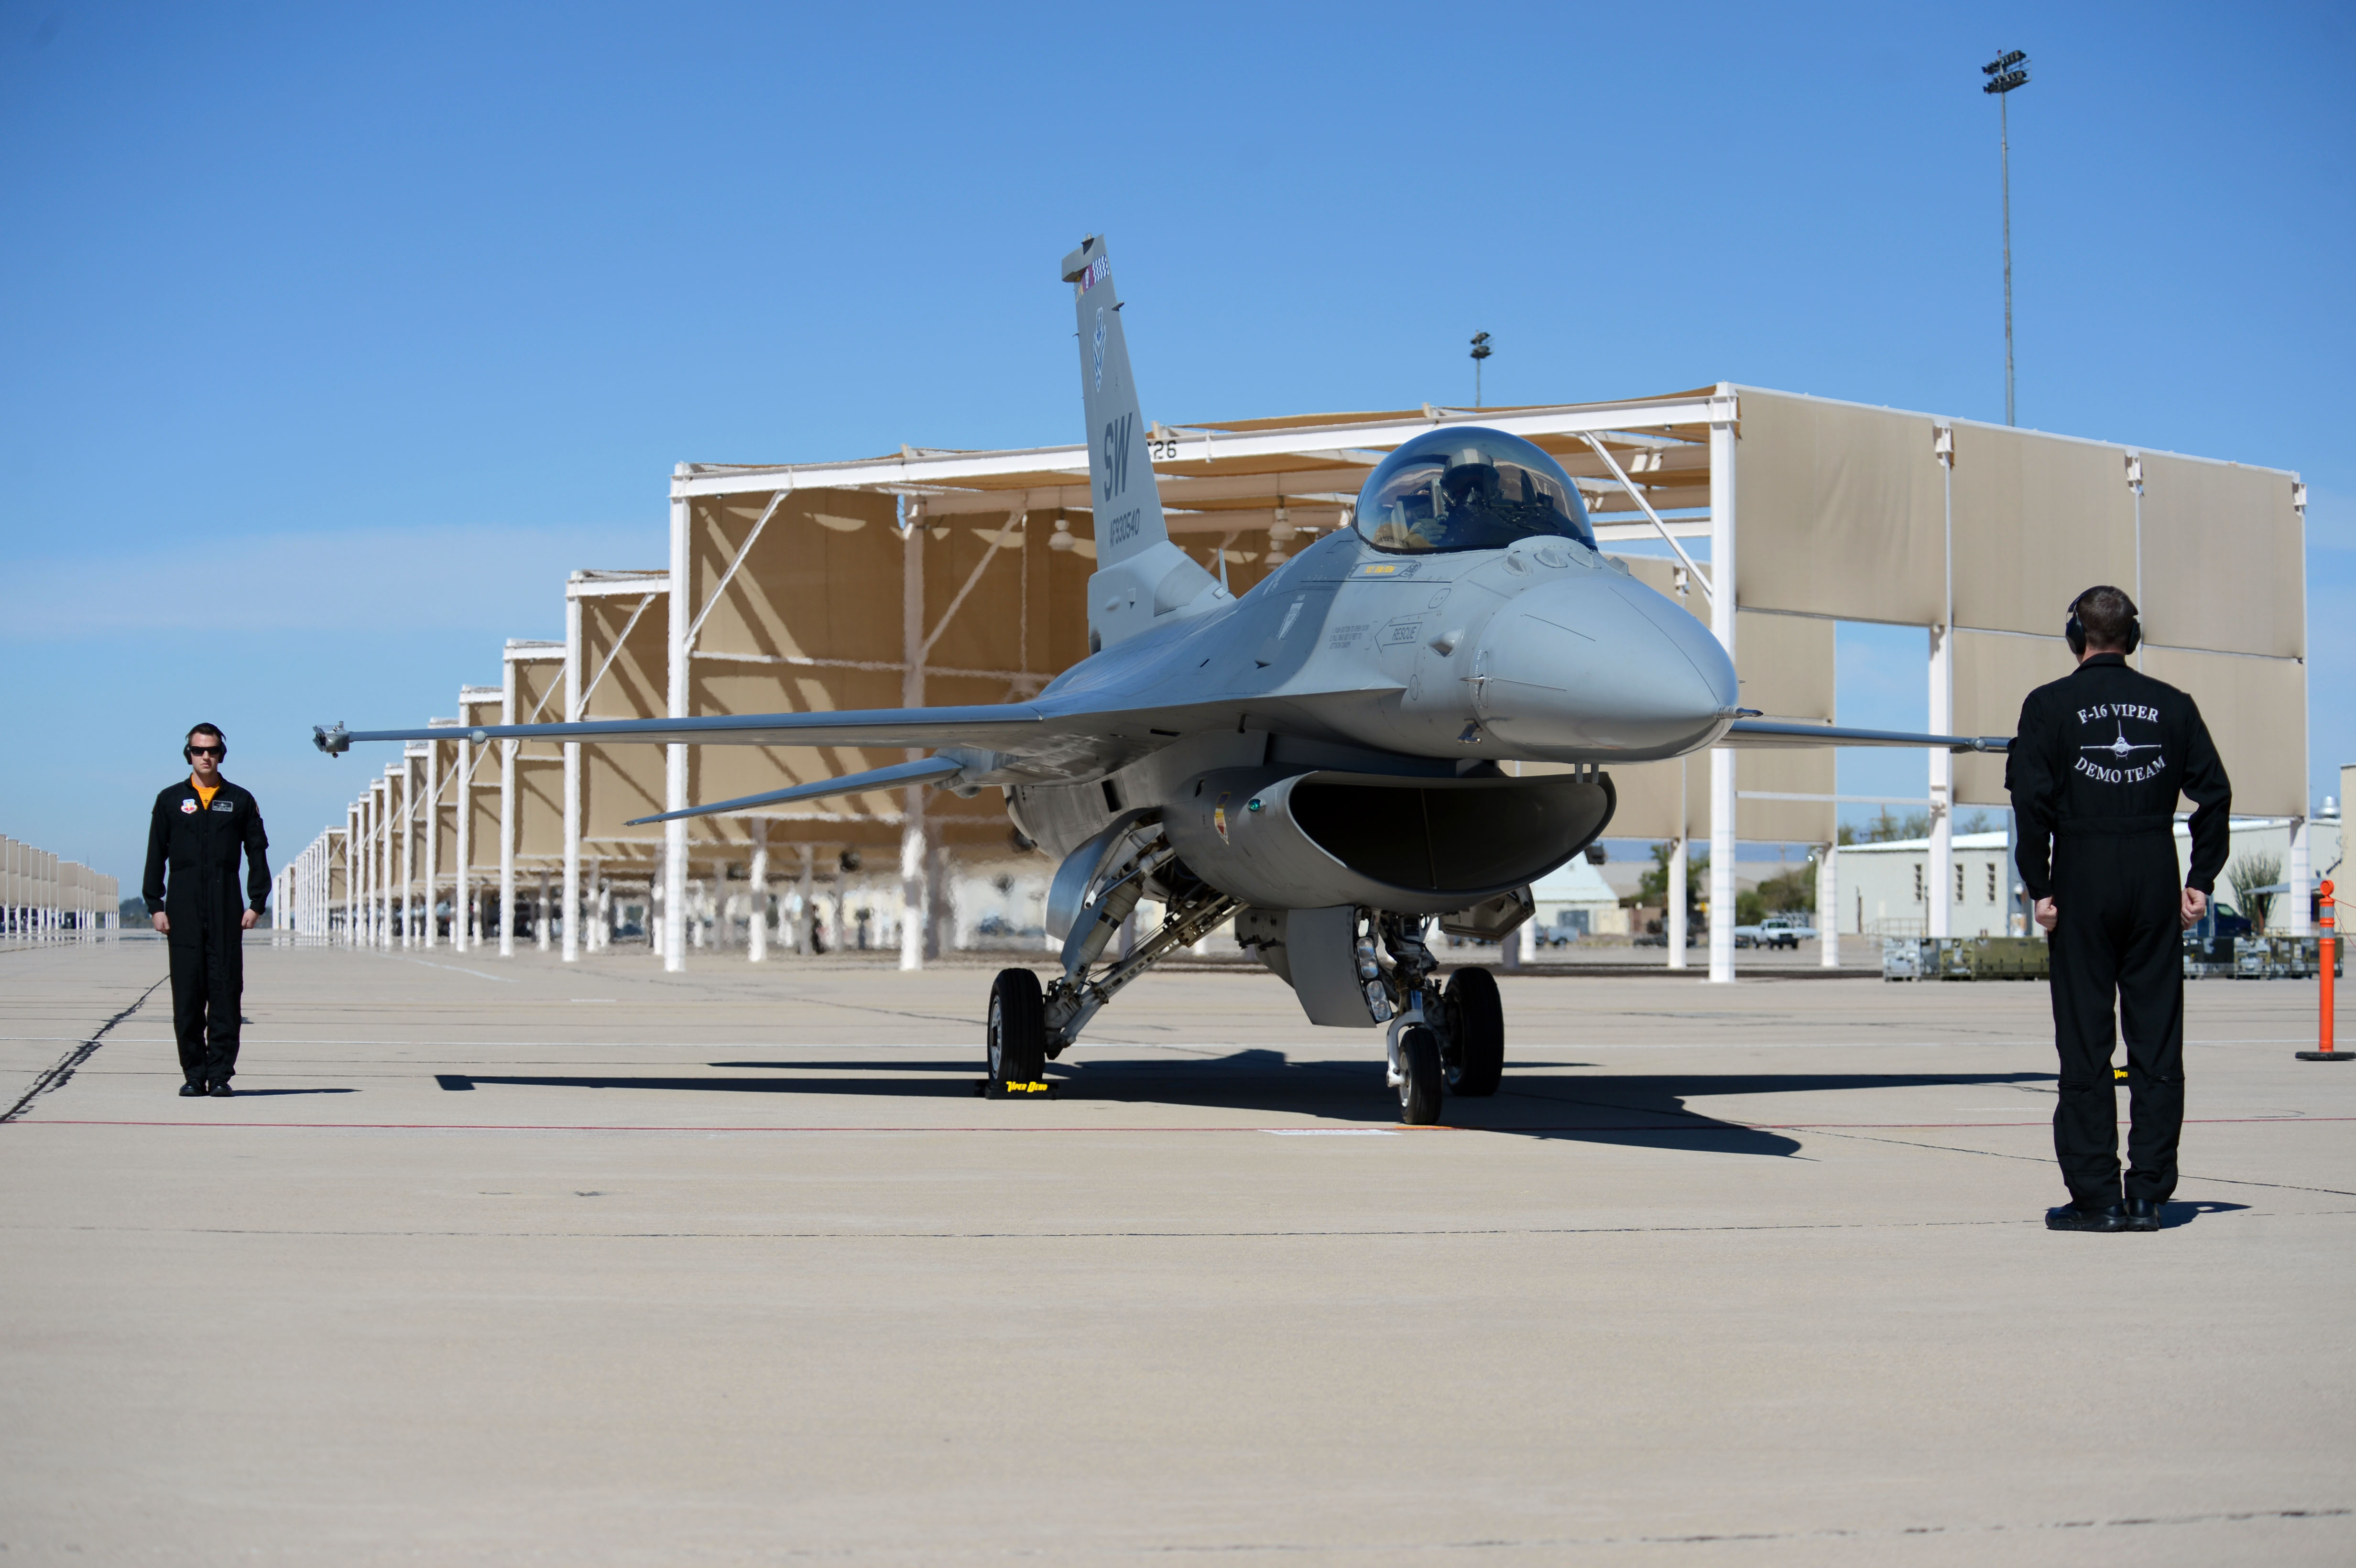 F16 airshow season kicks off > Shaw Air Force Base > Article Display